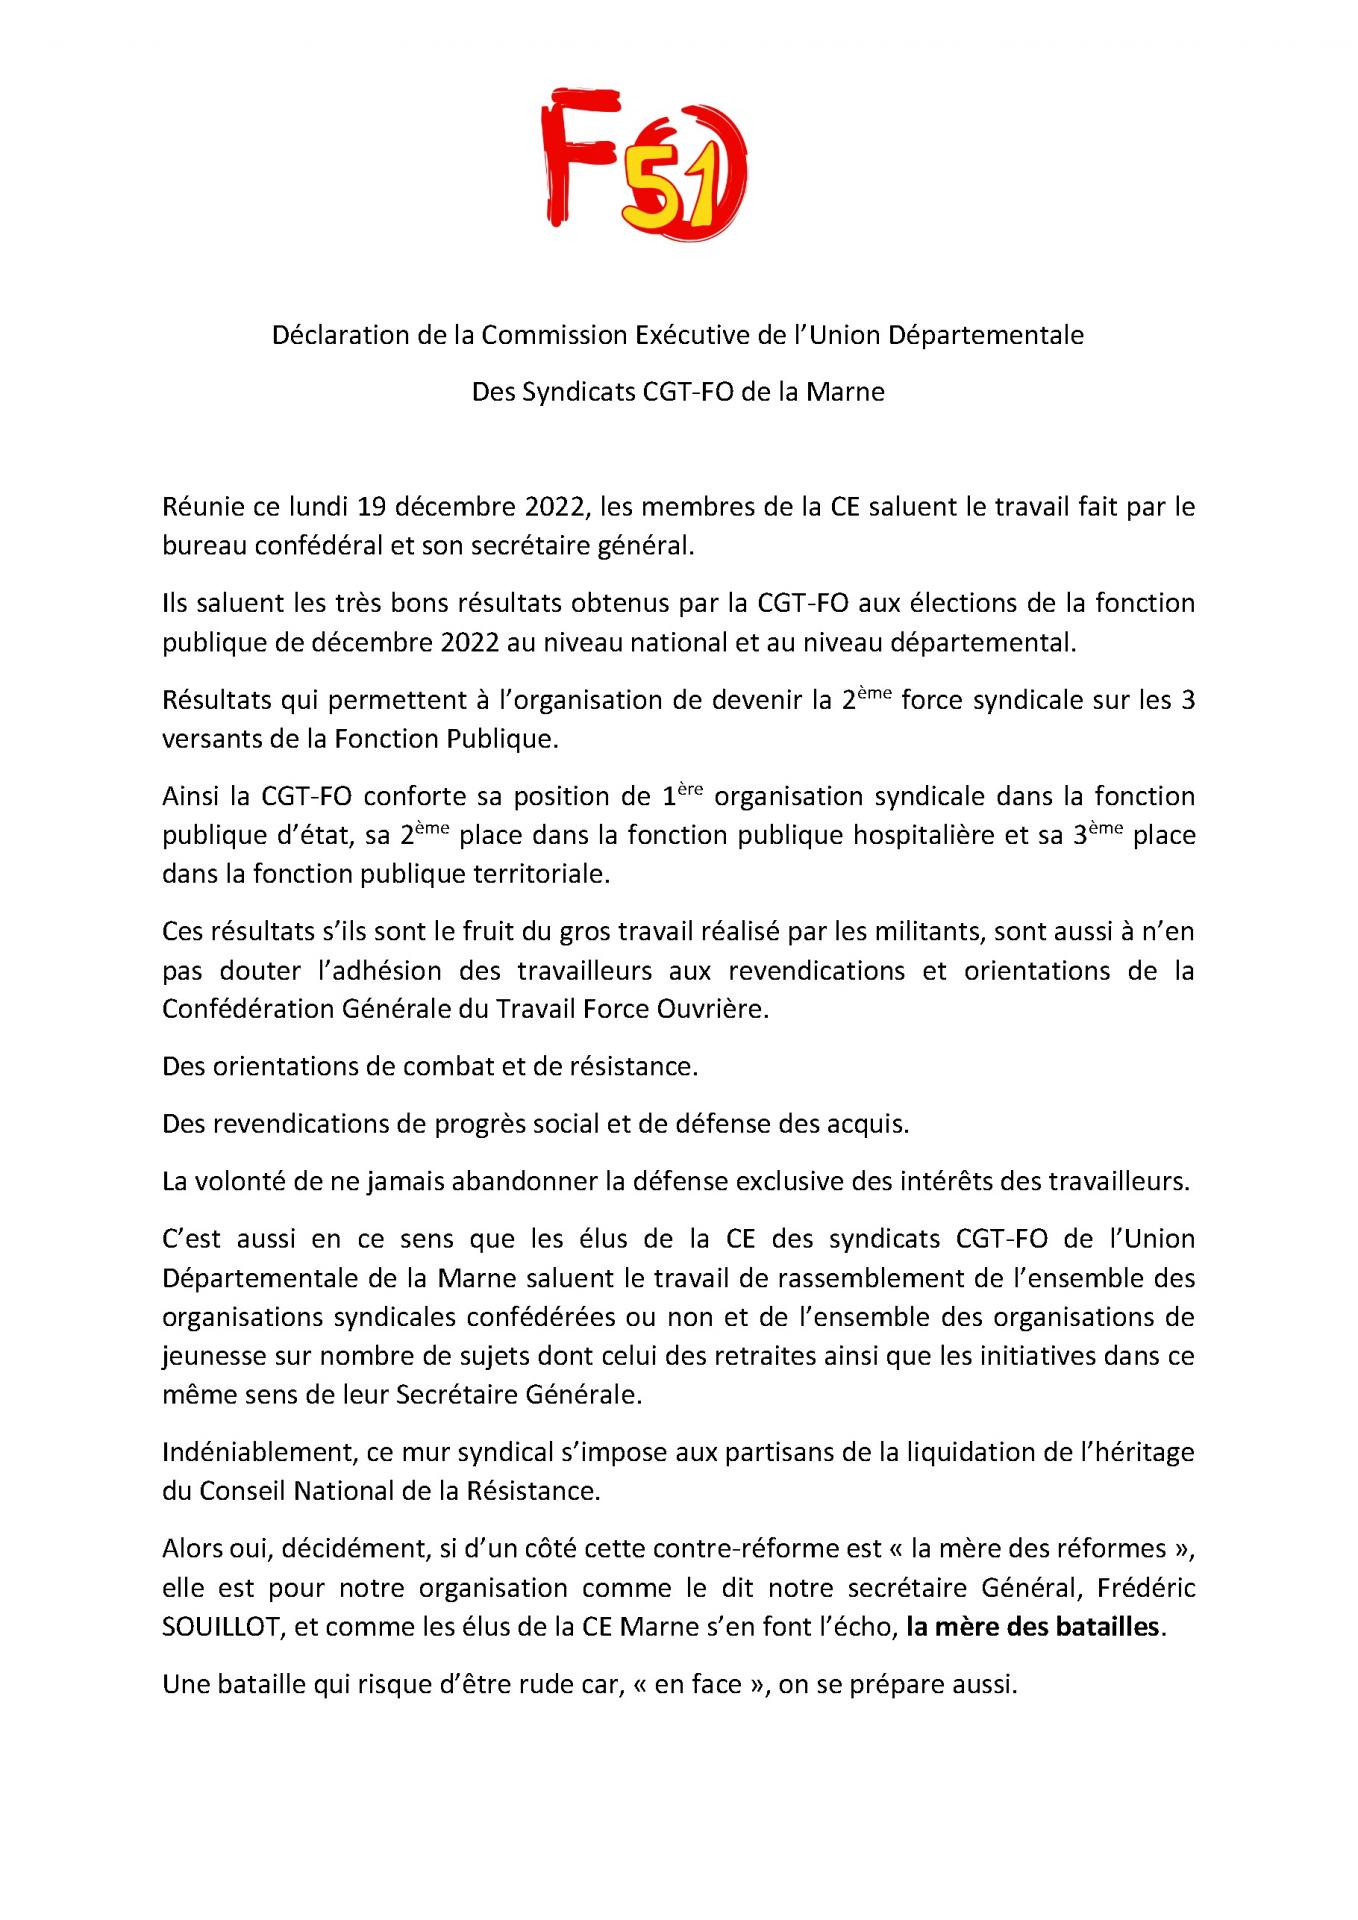 Déclaration CE udfo51 du 19-12-2022